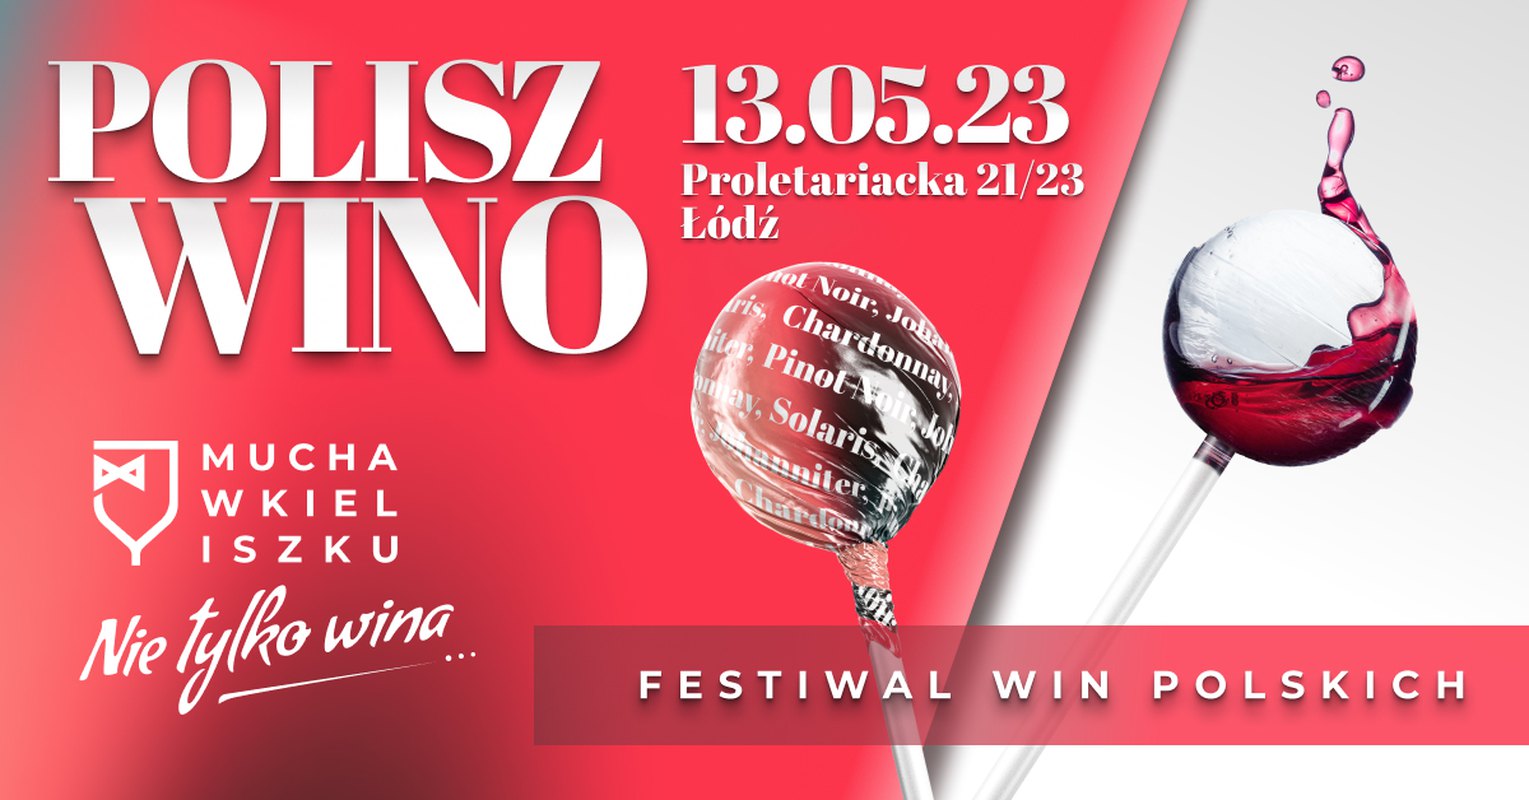 Festiwal Win Polskich POLISZ WINO - Mucha w Kieliszku, ŁÓDŹ 13.05.2023